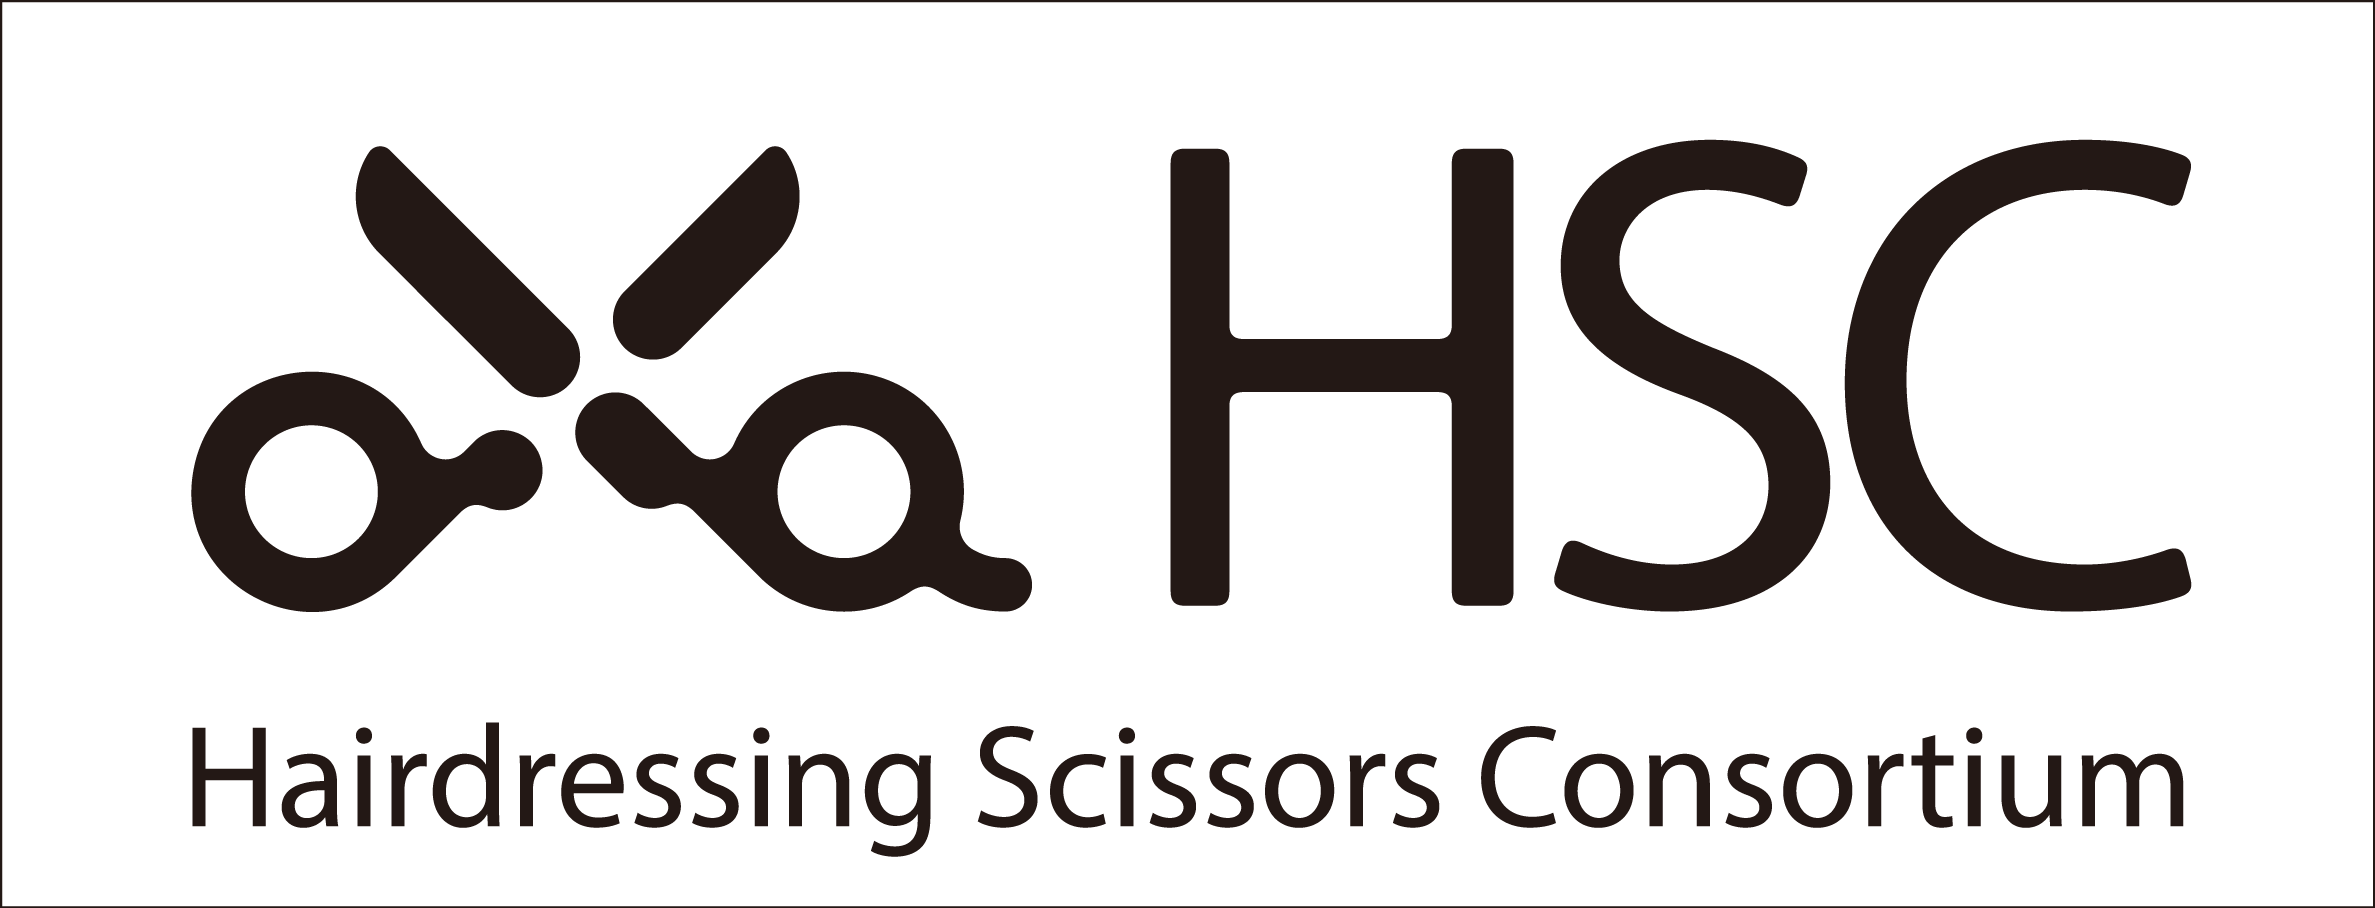 HSC (Hair-dressing Scissors Consortium)